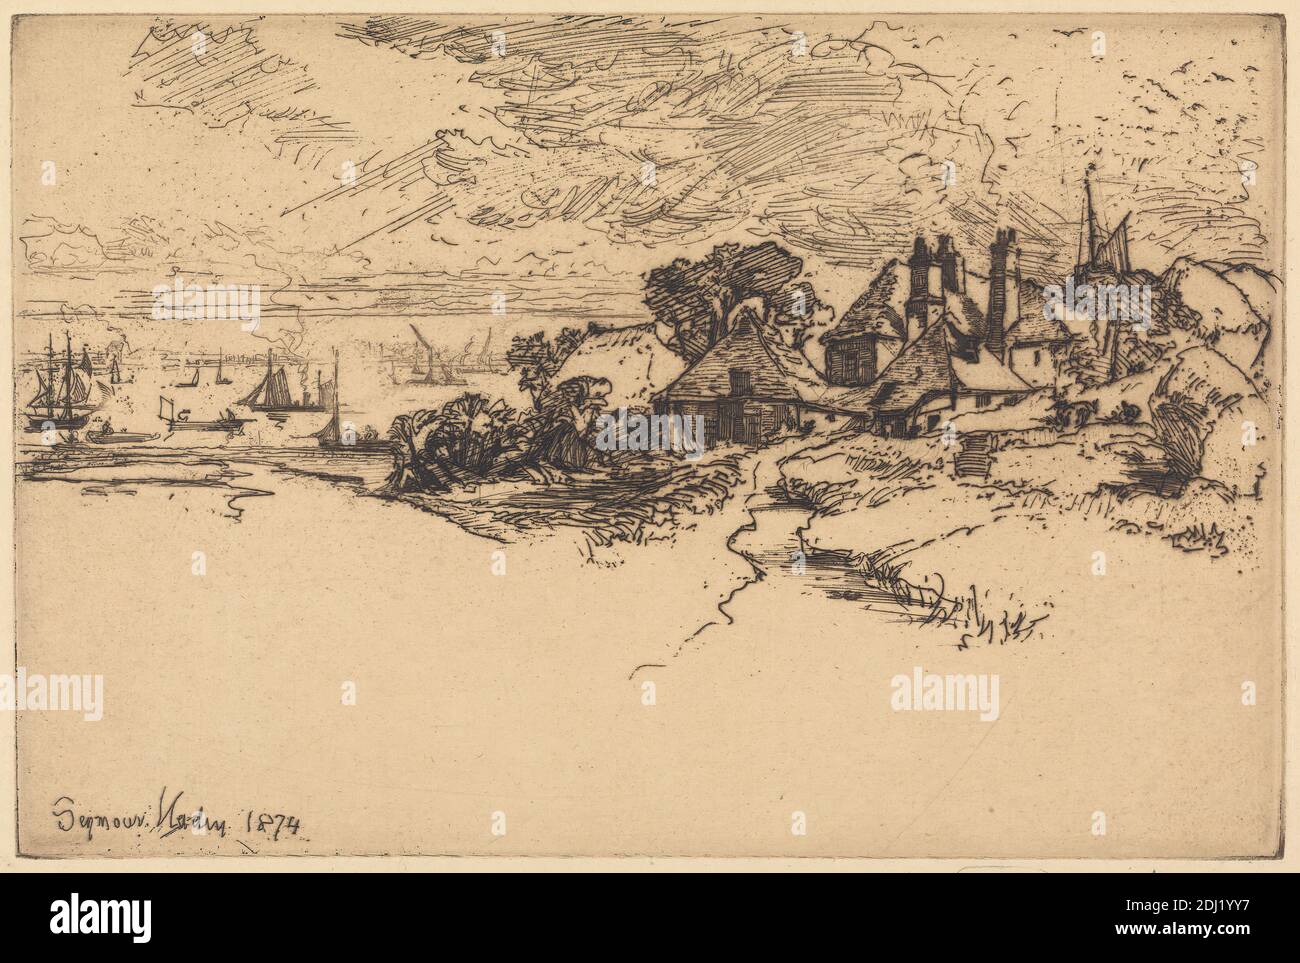 An Essex Farm, Francis Seymour Haden, 1818–1910, British, 1874, Ätzung und Trockenpunkt, mit Tellerton auf mäßig dickem, glattem, cremefarbenem Papier, Blatt: 8 7/16 x 13 7/16 Zoll (21.5 x 34.2 cm), Teller: 6 15/16 x 10 3/8 Zoll (17.6 x 26.4 cm) und Bild: 6 15/16 x 10 3/8 Zoll (17.6 x 26.4 cm), Architekturmotiv, Boote, Bach, Gebäude, Büsche, Kamine, Wolken, Jollen, Bauernhof, Haus, Landschaft, Meereskunst, Masten, Meteorologie, Hafen, Fluss, Felsen (Landformen), Dächer, Segel, Wissenschaft, Meer, Seeleute, Schiffe, Ufer (Landform), Bach, Bäume, Wetter, England, Essex, Europa, Themse, United Stockfoto